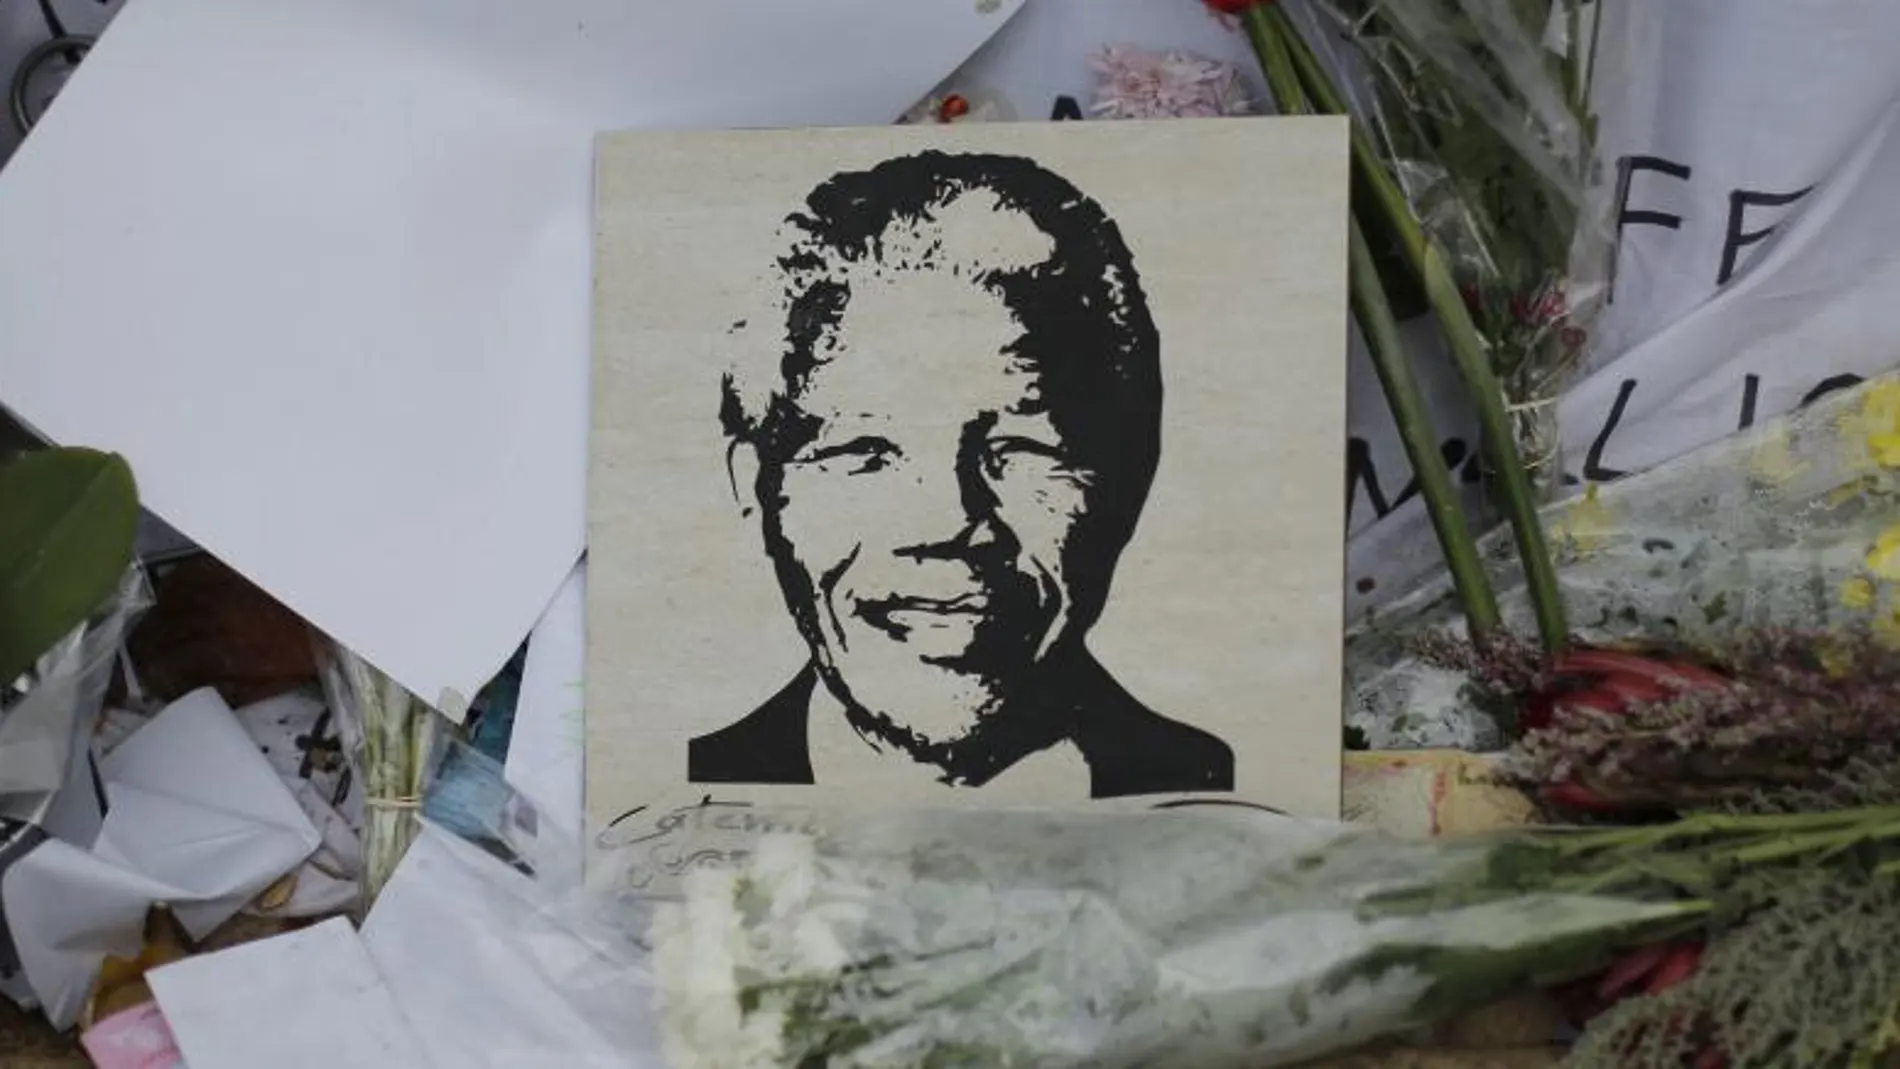 Un retrato del expresidente sudafricano Nelsom Mandela decora un acceso al hospital en el que permanece ingresado, en Pretoria